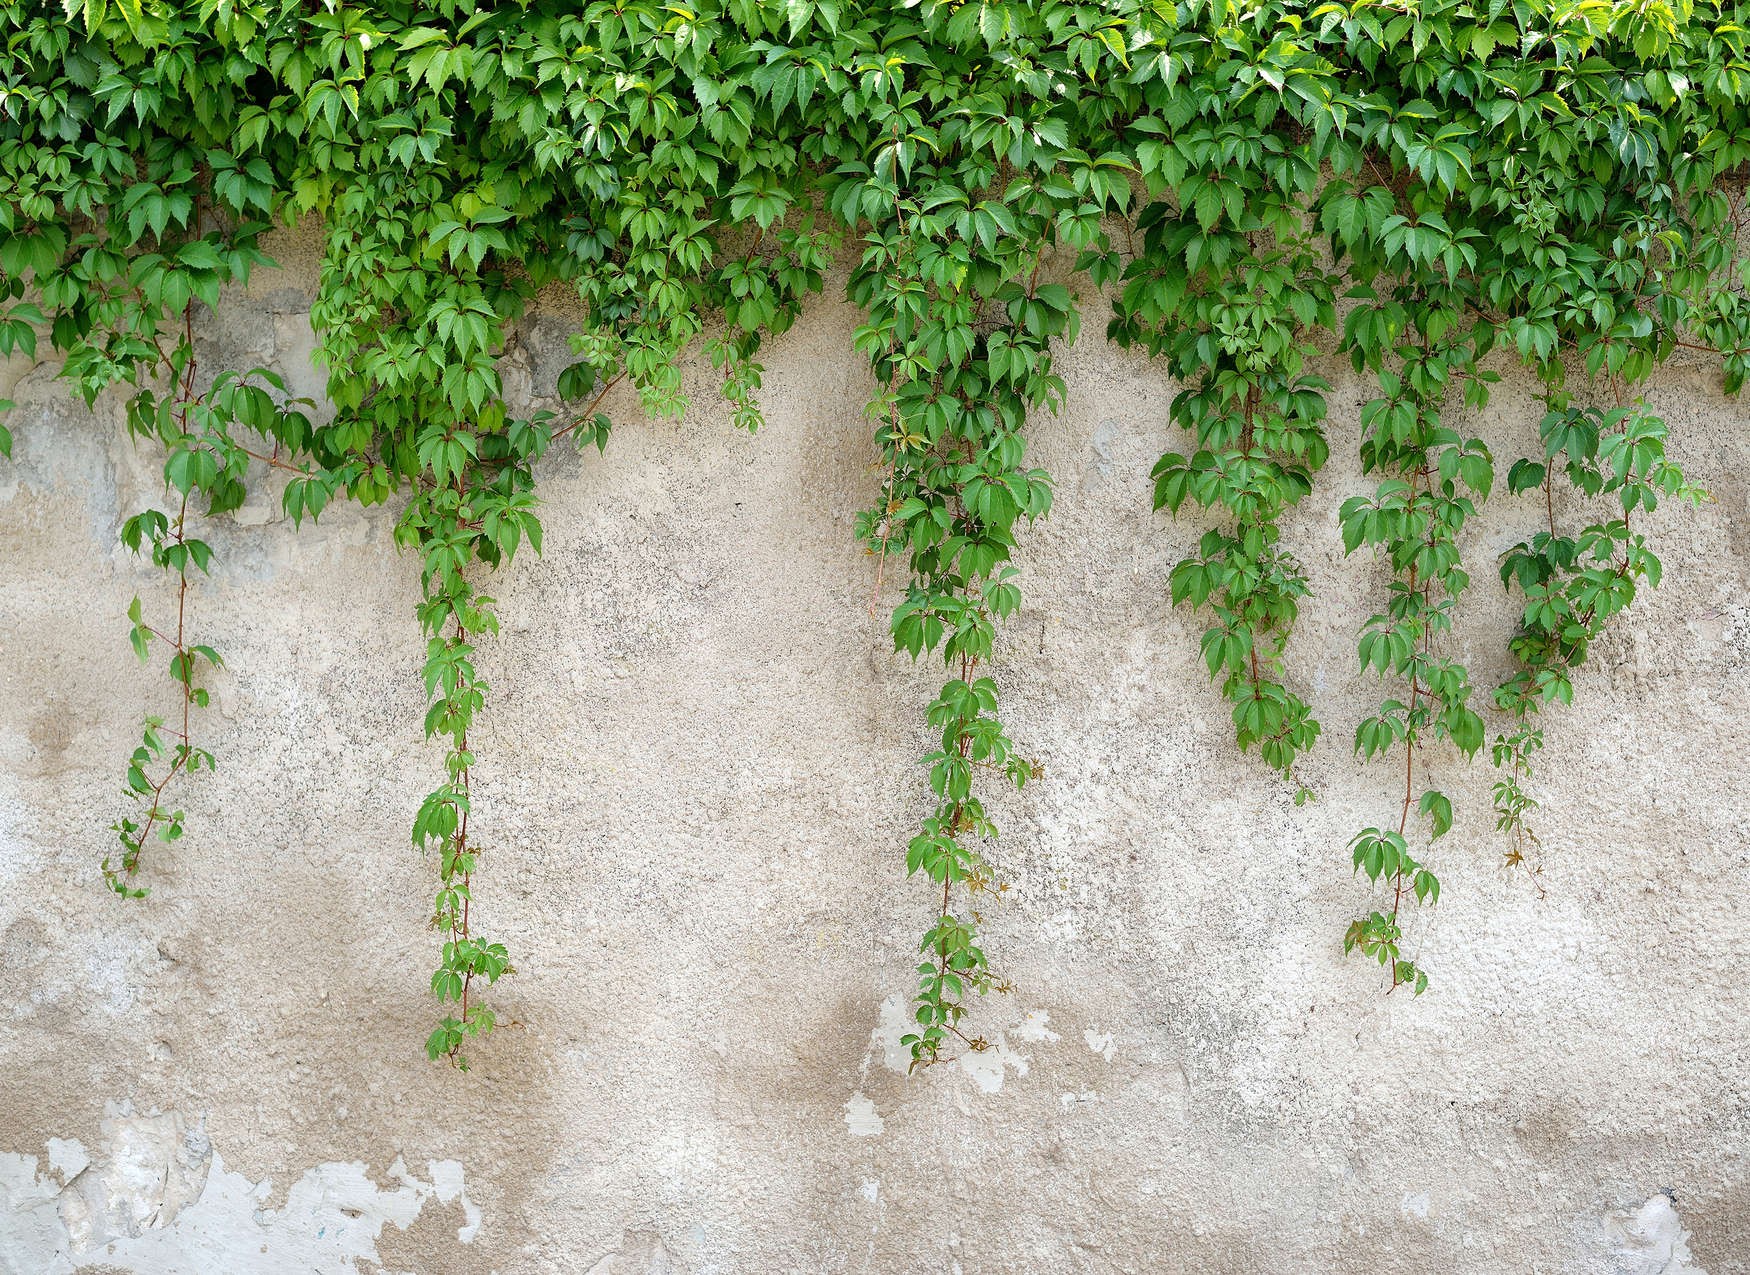             Betonnen muur met bladranken - Groen, Grijs
        